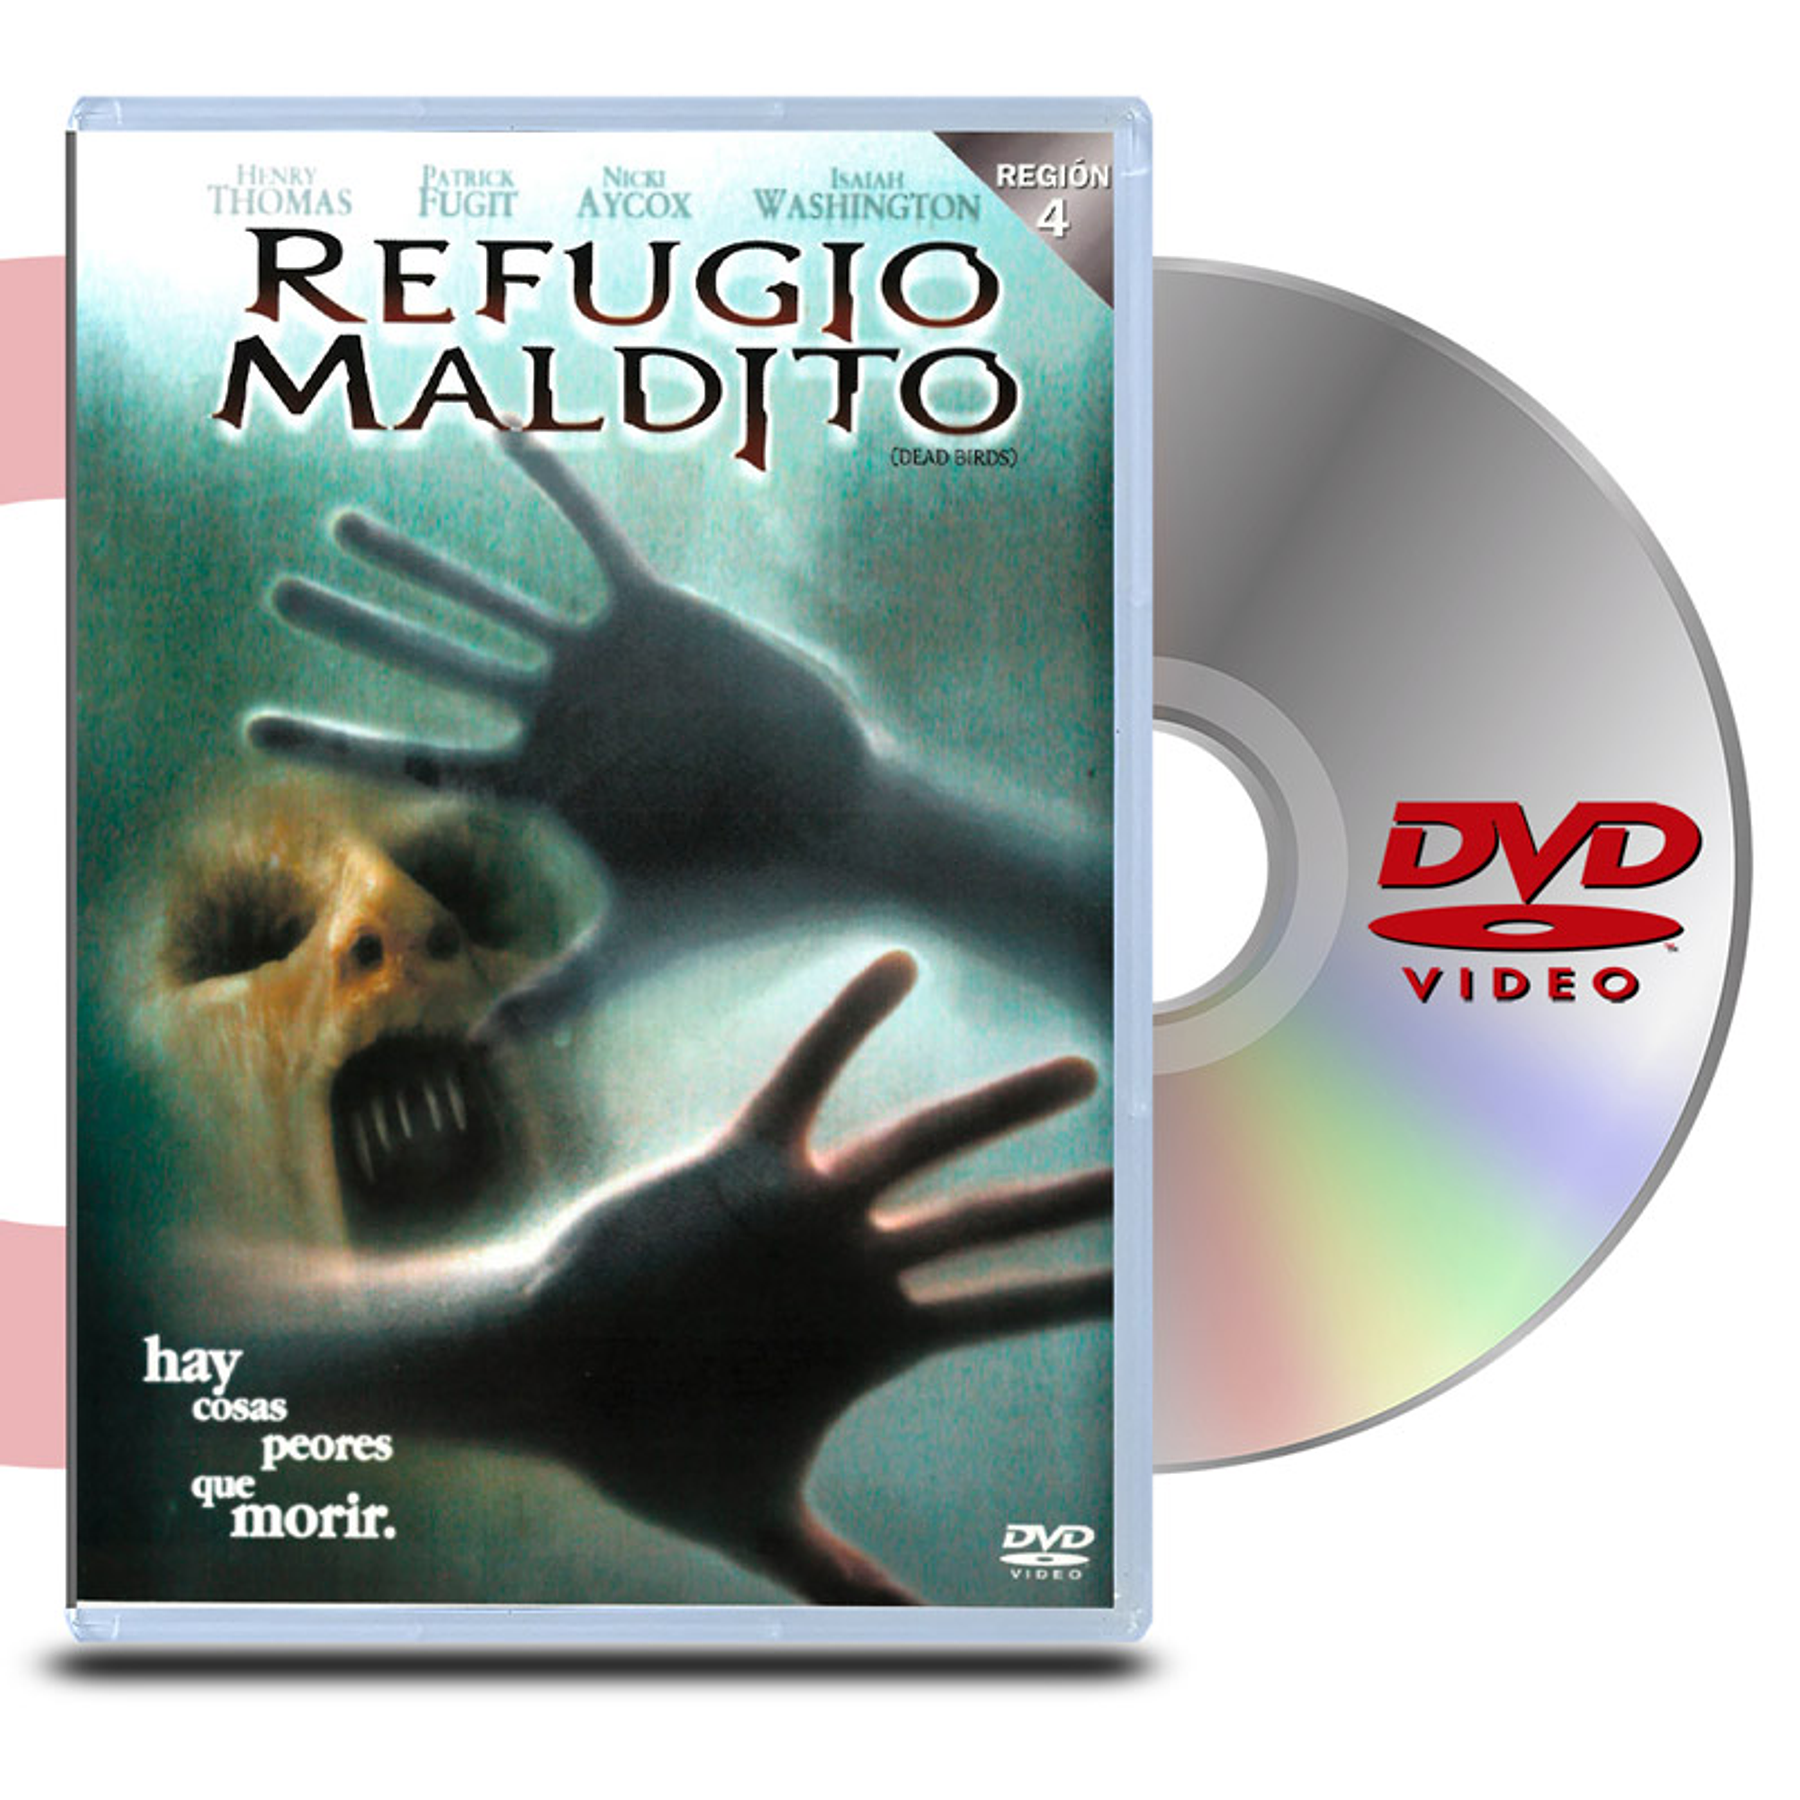 DVD REFUGIO MALDITO